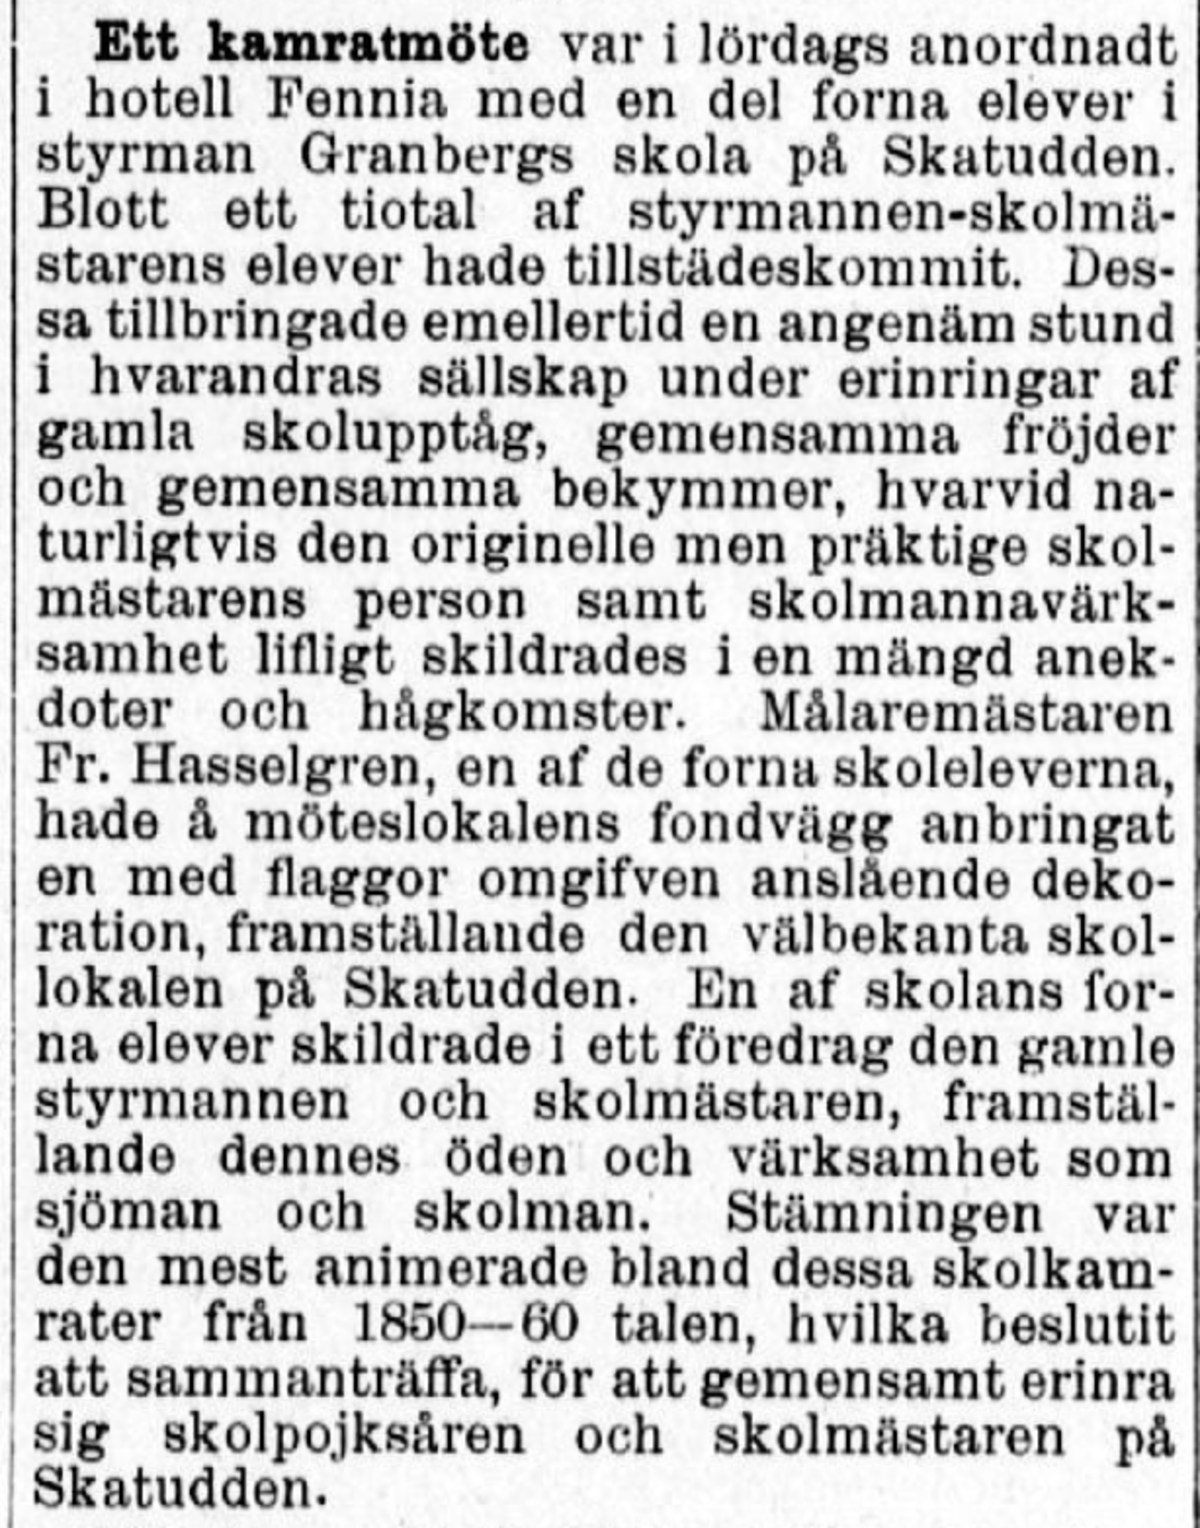 Victor Petterssons tidning Lördagen berättade 7.2.1903 om skolkamratsmötet. Foto: Nationalbibliotekets digitala samlingar